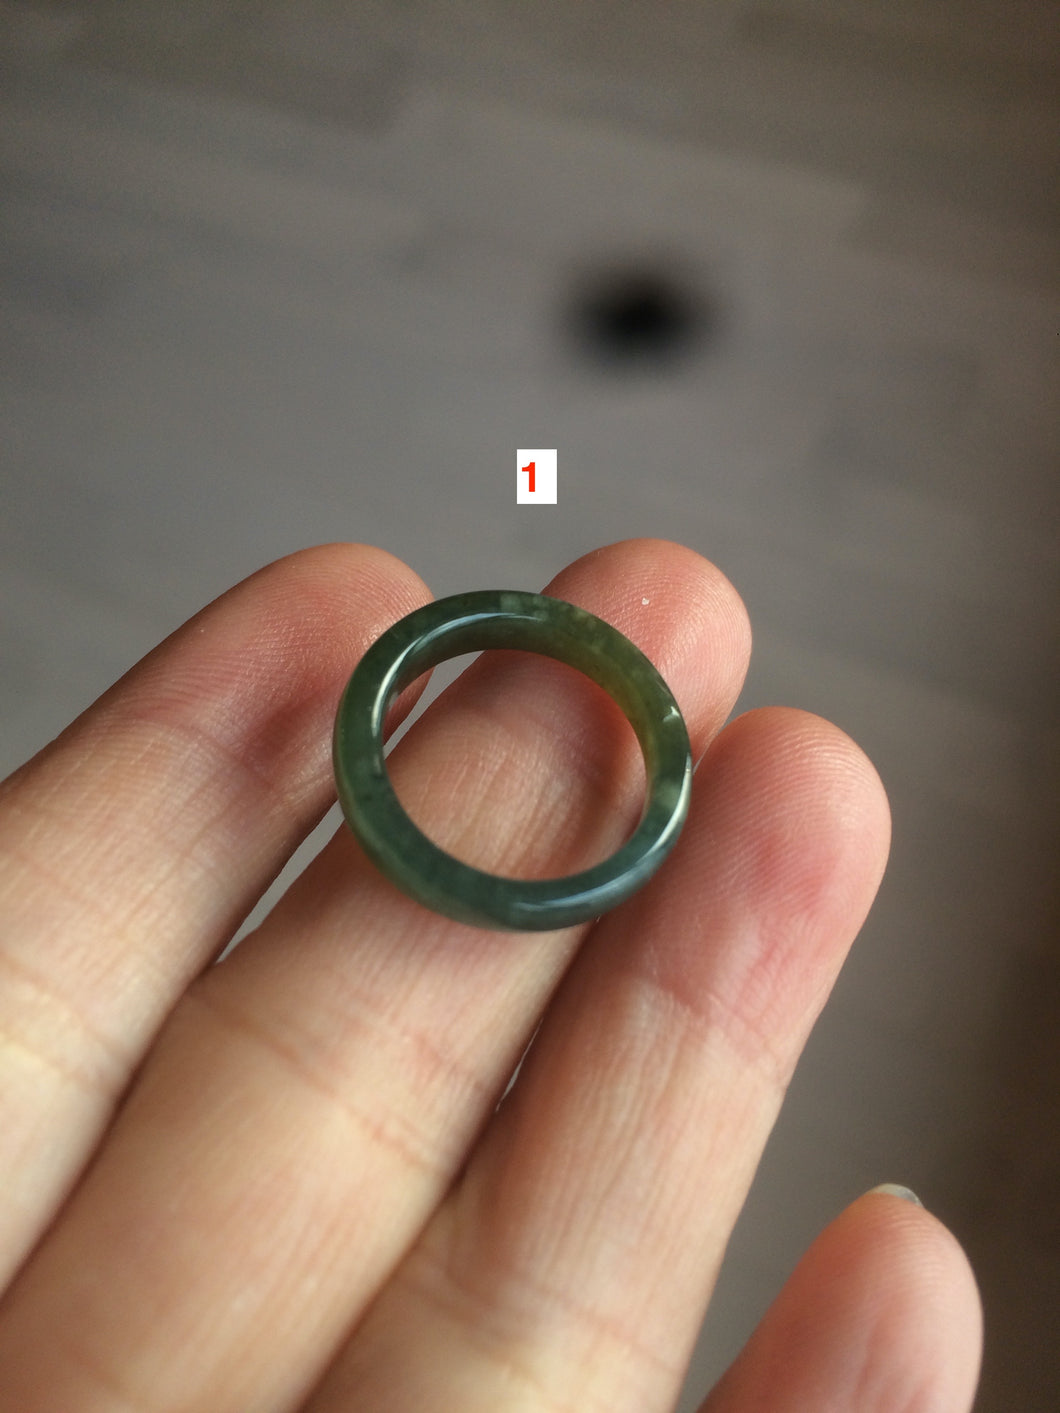 100% natural type A green/blue/gray Guatemala jadeite jade slim band ring AT81